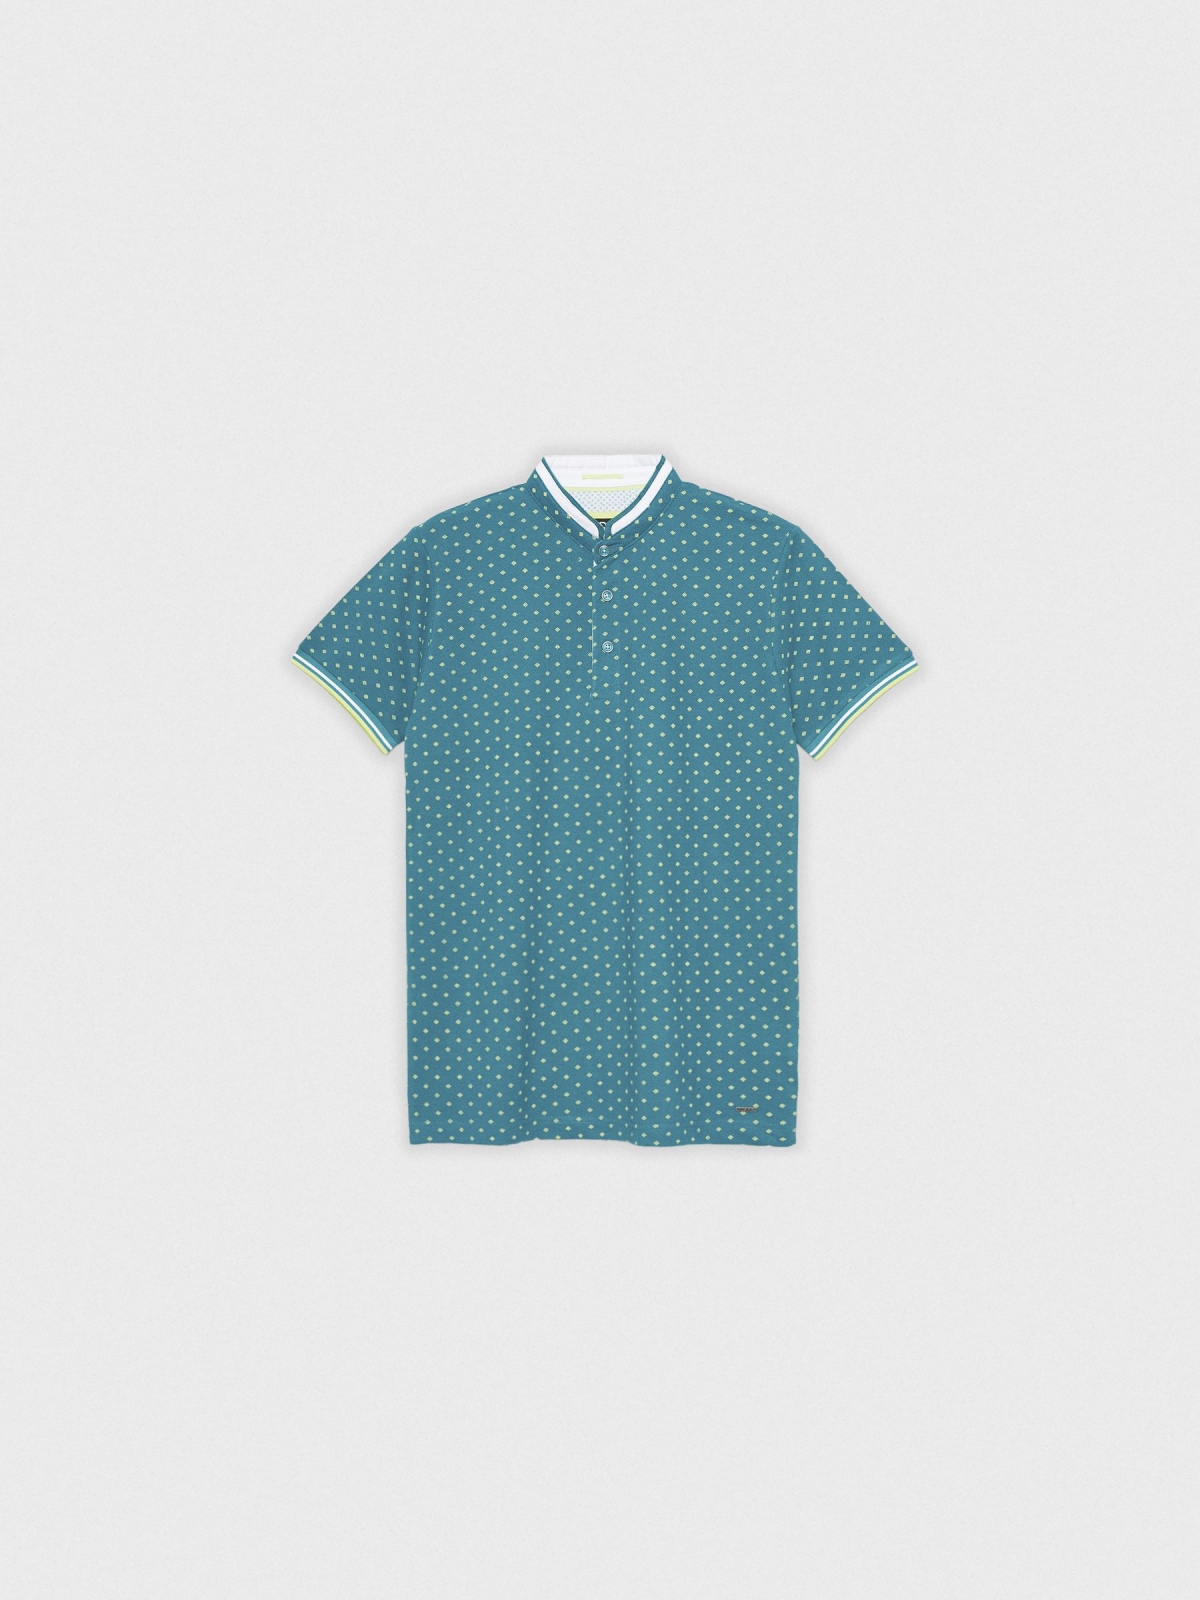  Geometric mao polo shirt emerald